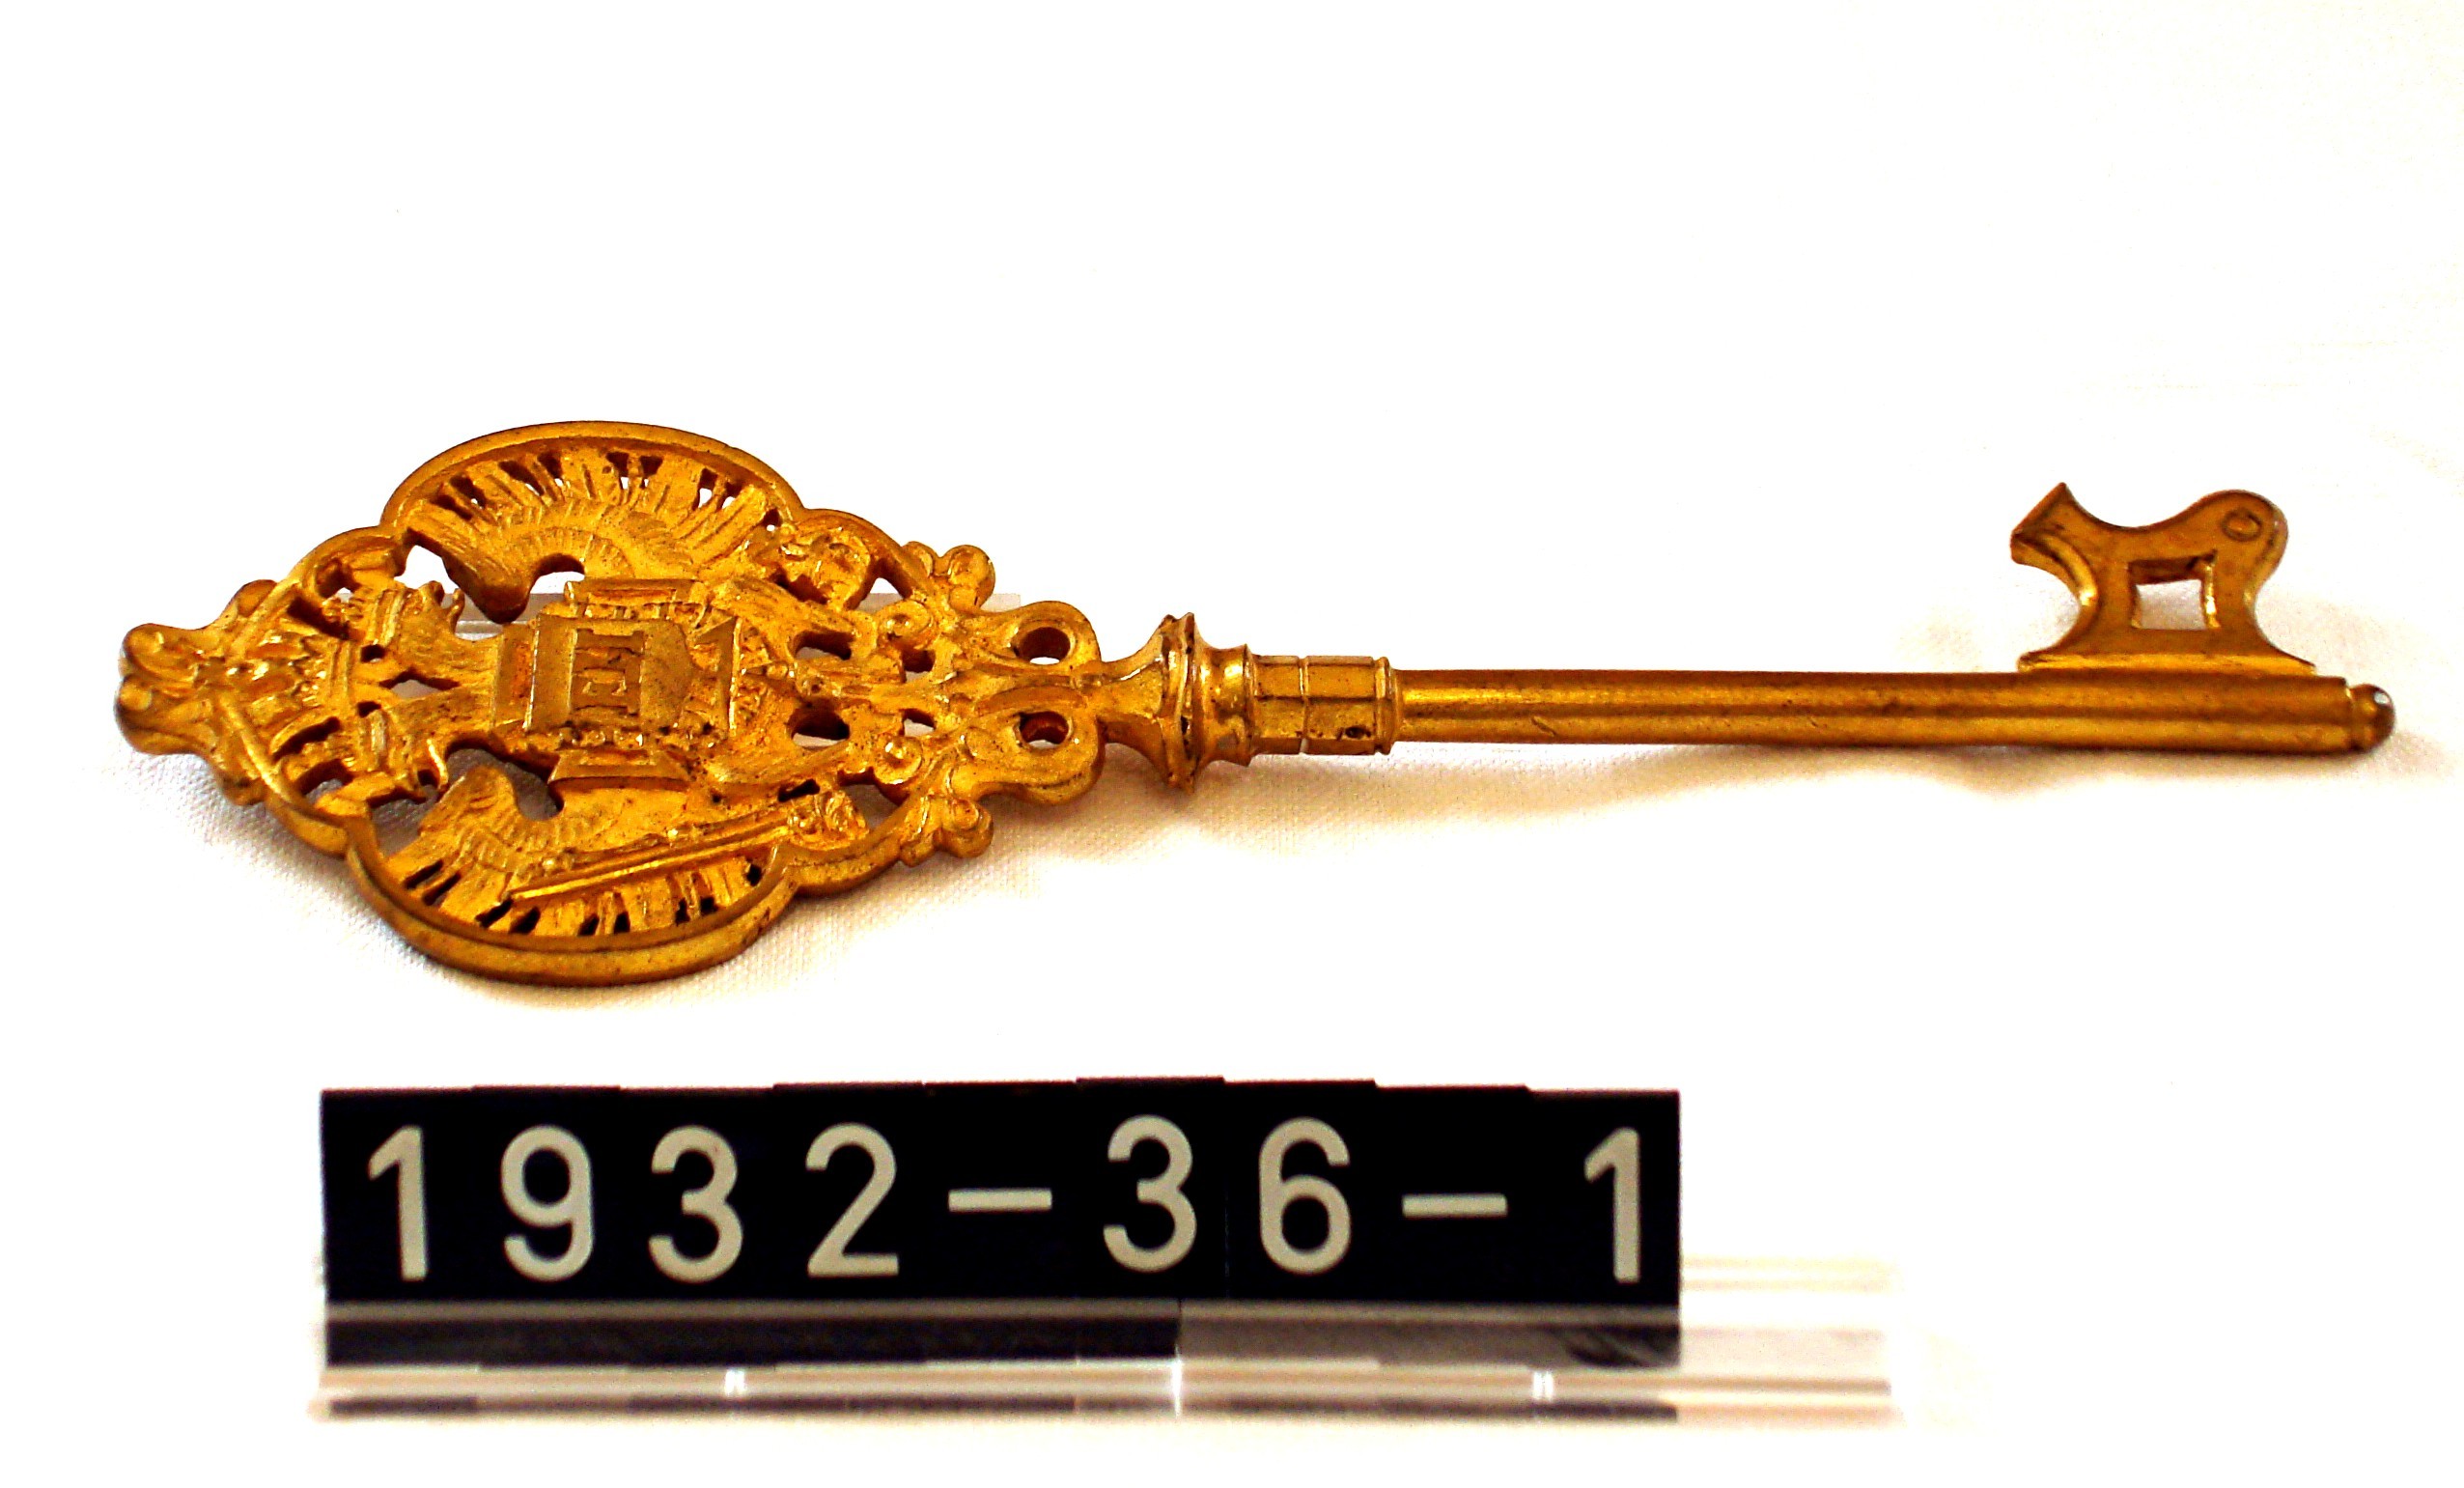 Schlüssel ; Kammerherrnschlüssel des Grafen zu Leiningen-Westerburg; 18. Jh. (Stadtmuseum Bad Dürkheim, Museumsgesellschaft Bad Dürkheim e.V. CC BY-NC-SA)